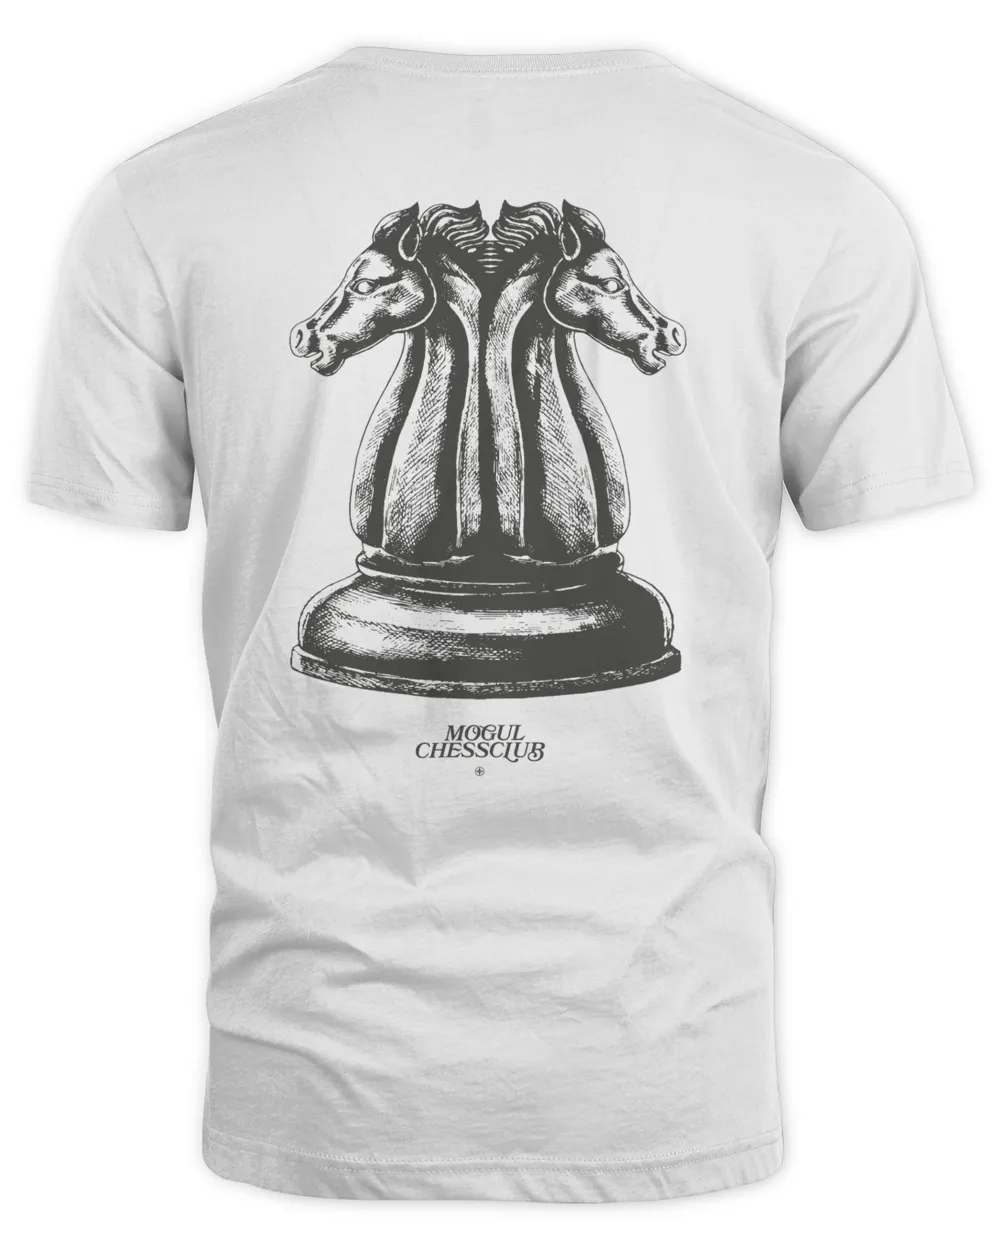 Ludwig Chess Boxing Merch Chess Club Shirt - NVDTeeshirt